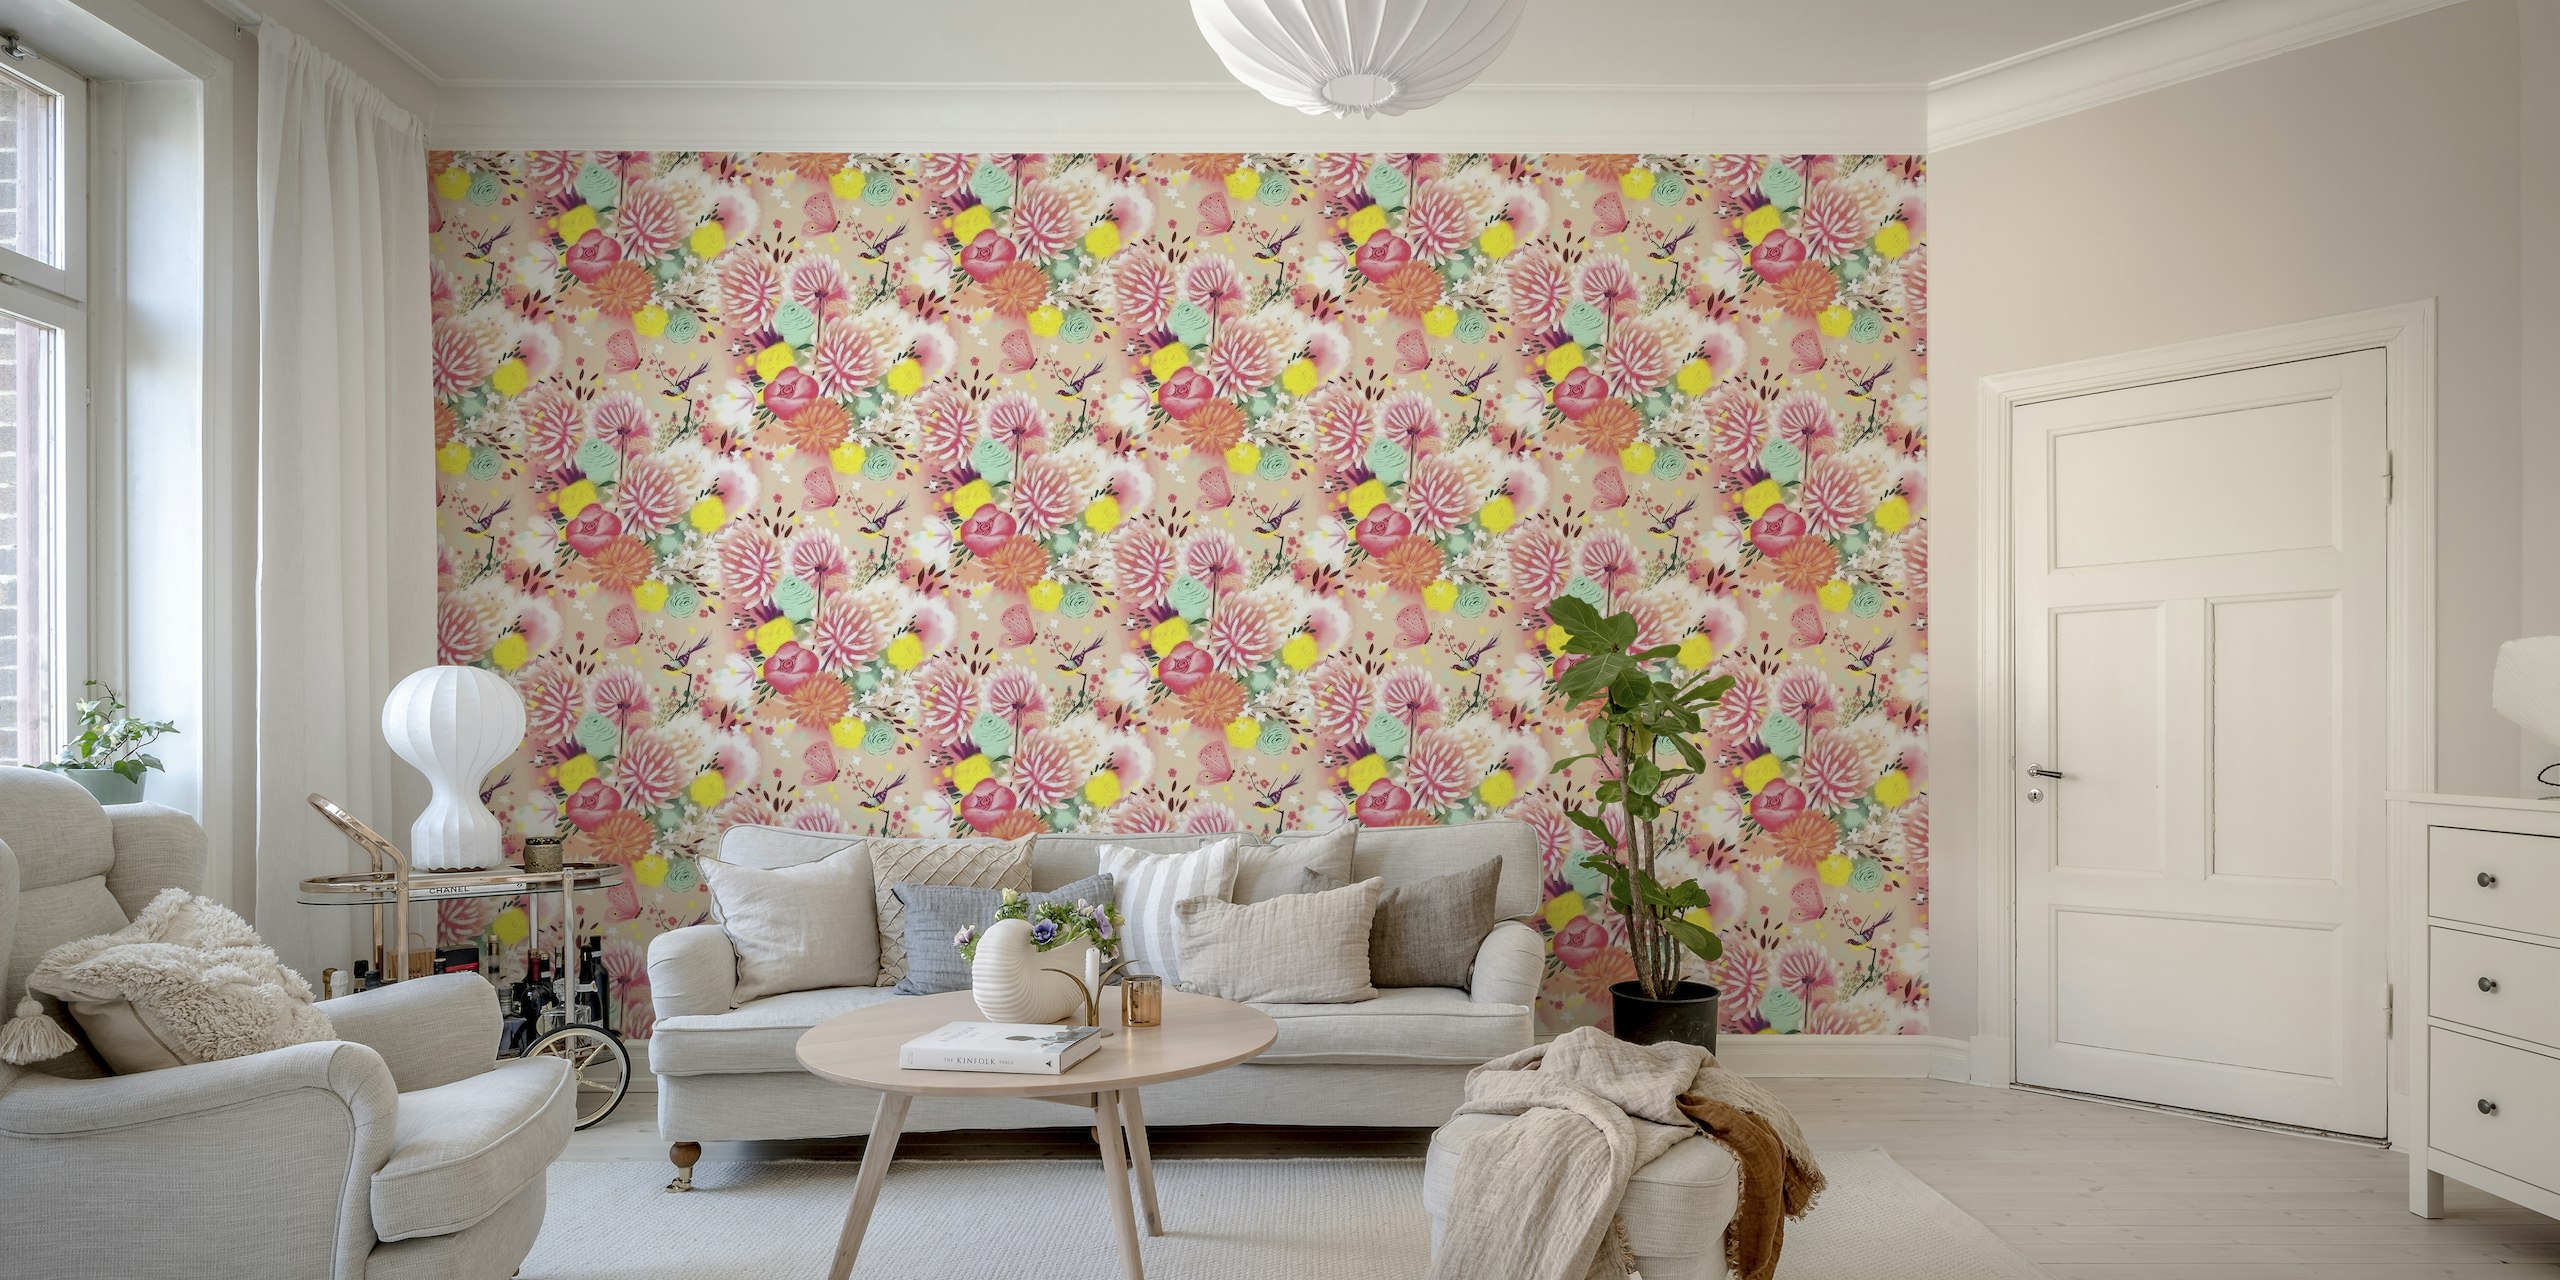 Decoratief fotobehang met zachte lentebloemen in pastelkleuren en een zachte vlinder.